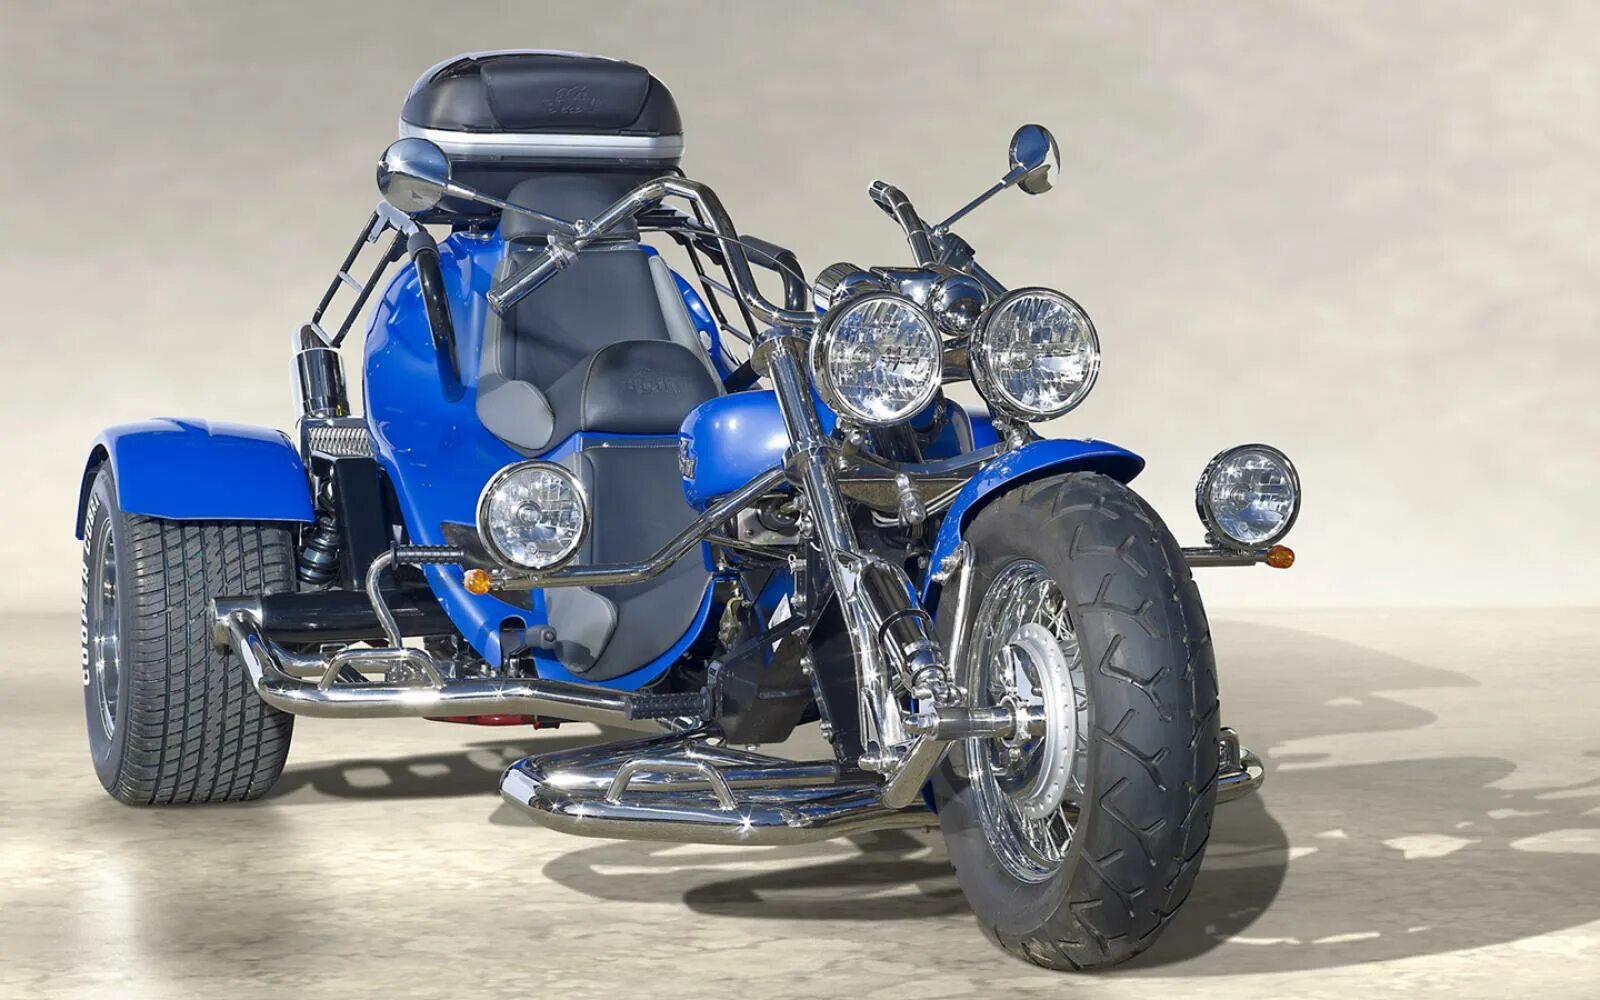 Купить на 3 мотоцикл. Мотоцикл Урал трайк. Мотоцикл Харлей Дэвидсон 3 колесный. Трёхколёсный мотоцикл Triketec. Трёхколёсный мотоцикл Harley Davidson.